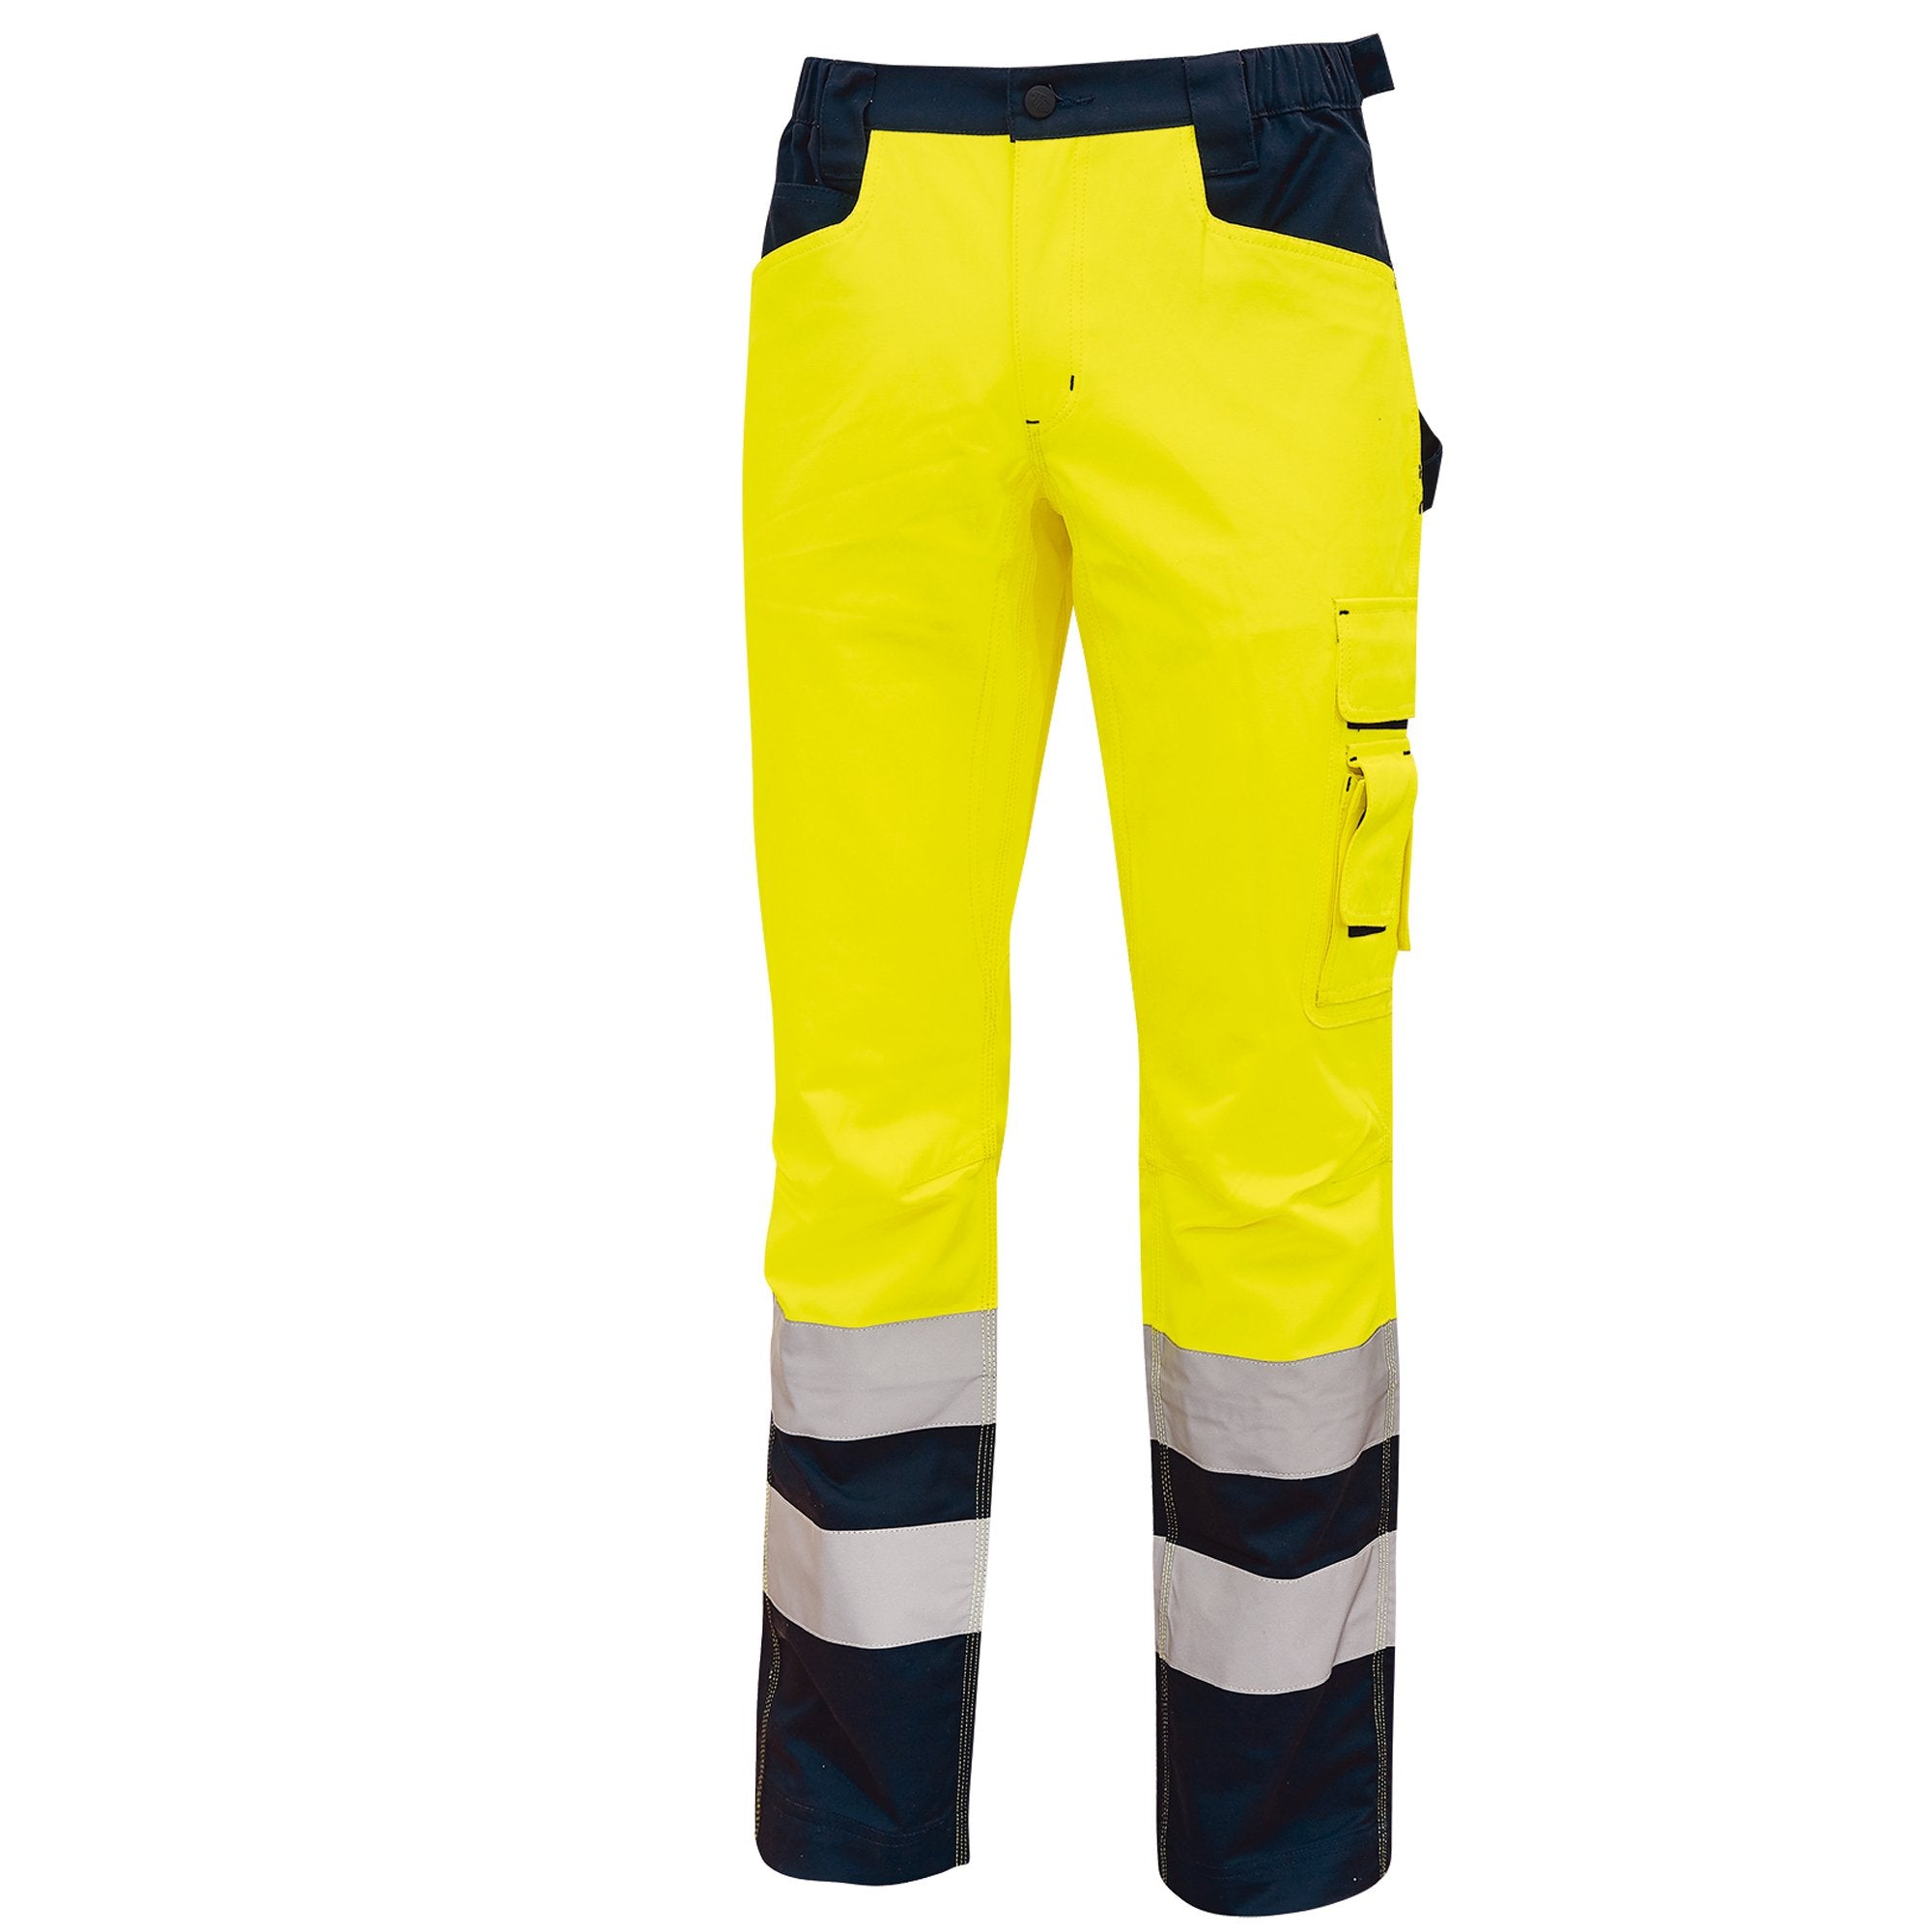 u-power-pantalone-invernale-alta-visibilita-beacon-giallo-fluo-taglia-xl